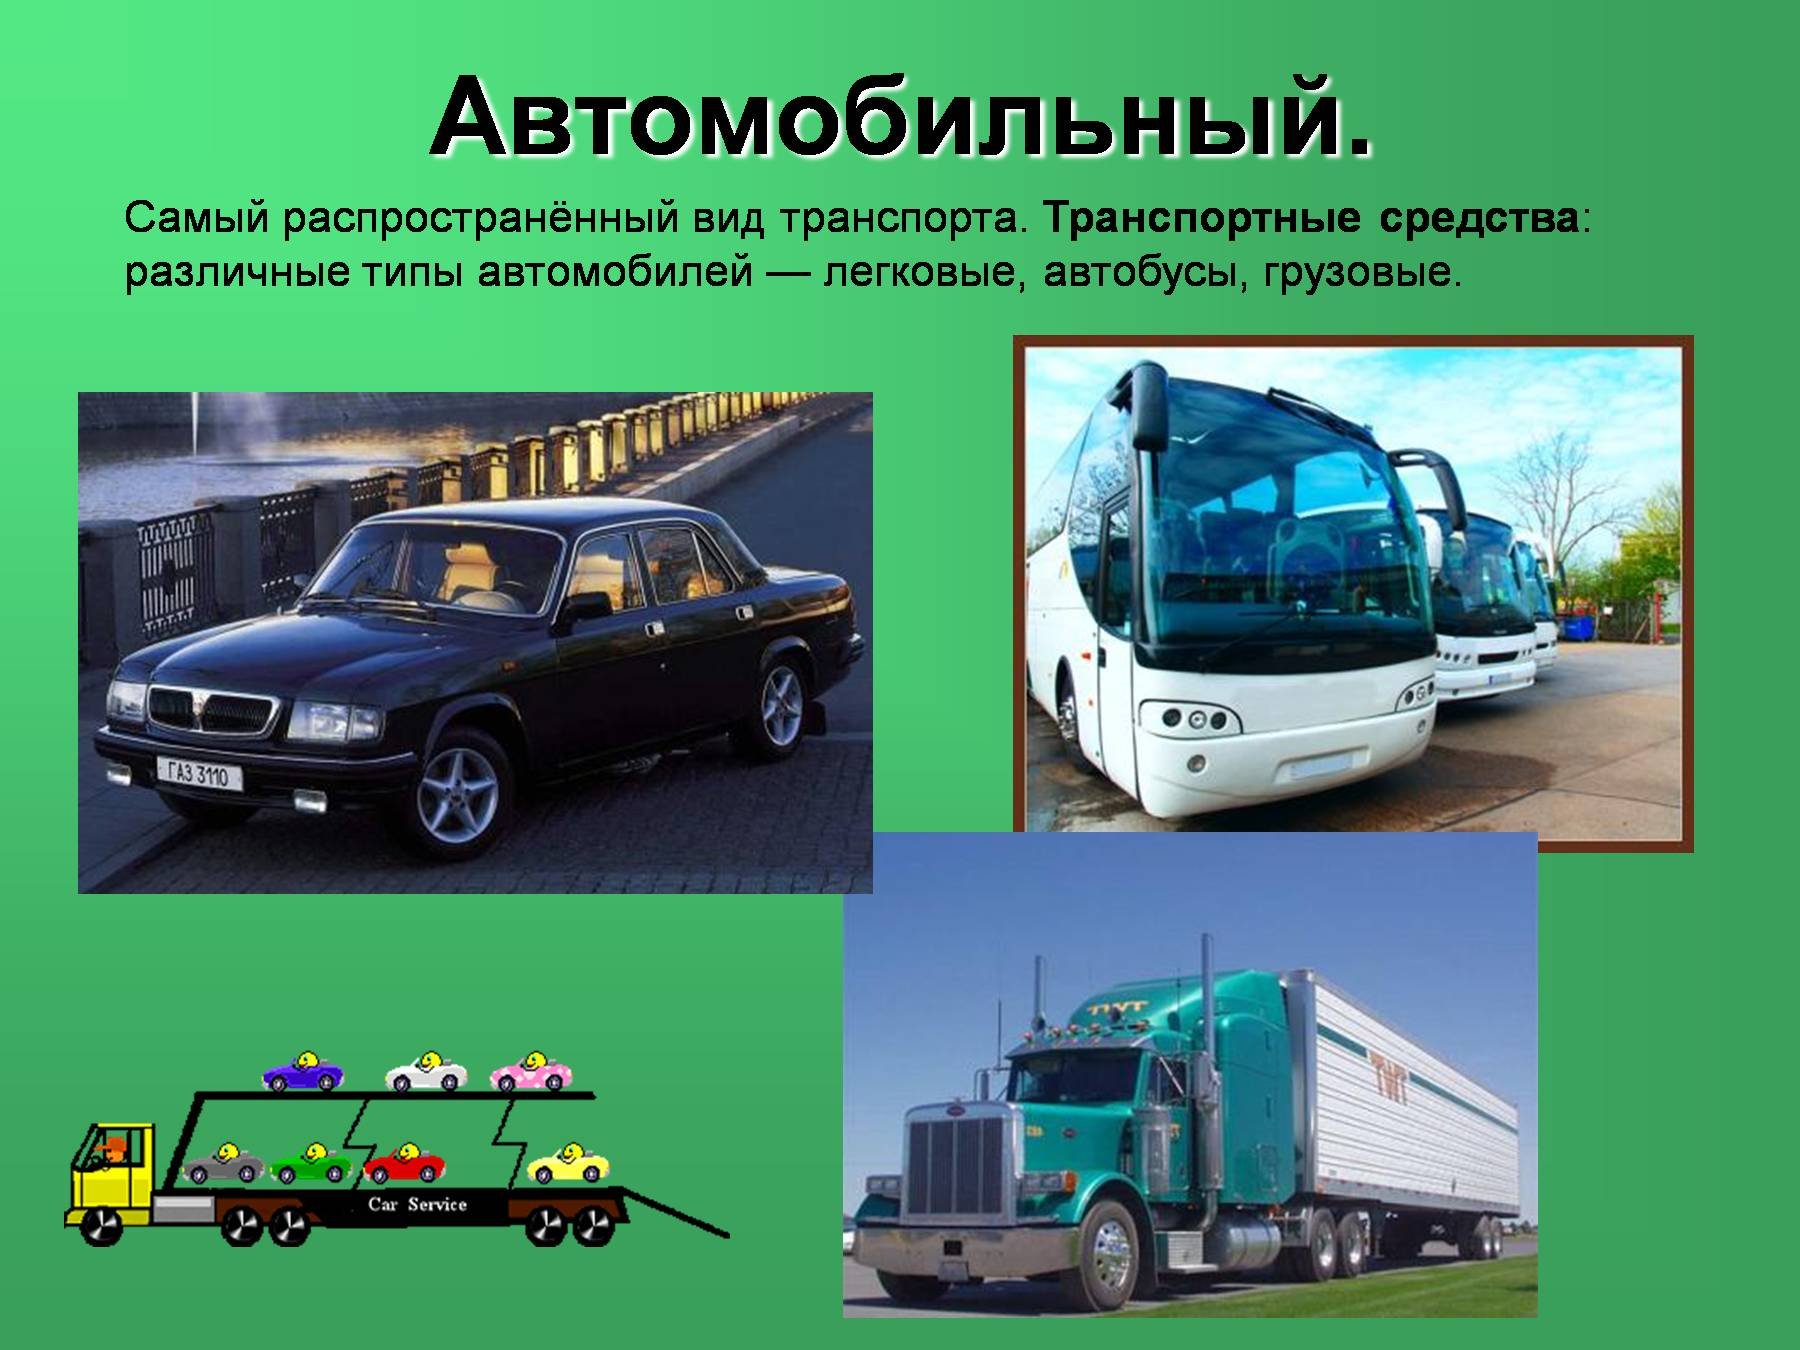 Автомобильная транспортная информация. Виды автомобильного транспорта. Транспортные средства. Виды транспорта автомобиль. Автомобильный транспорт слайд.